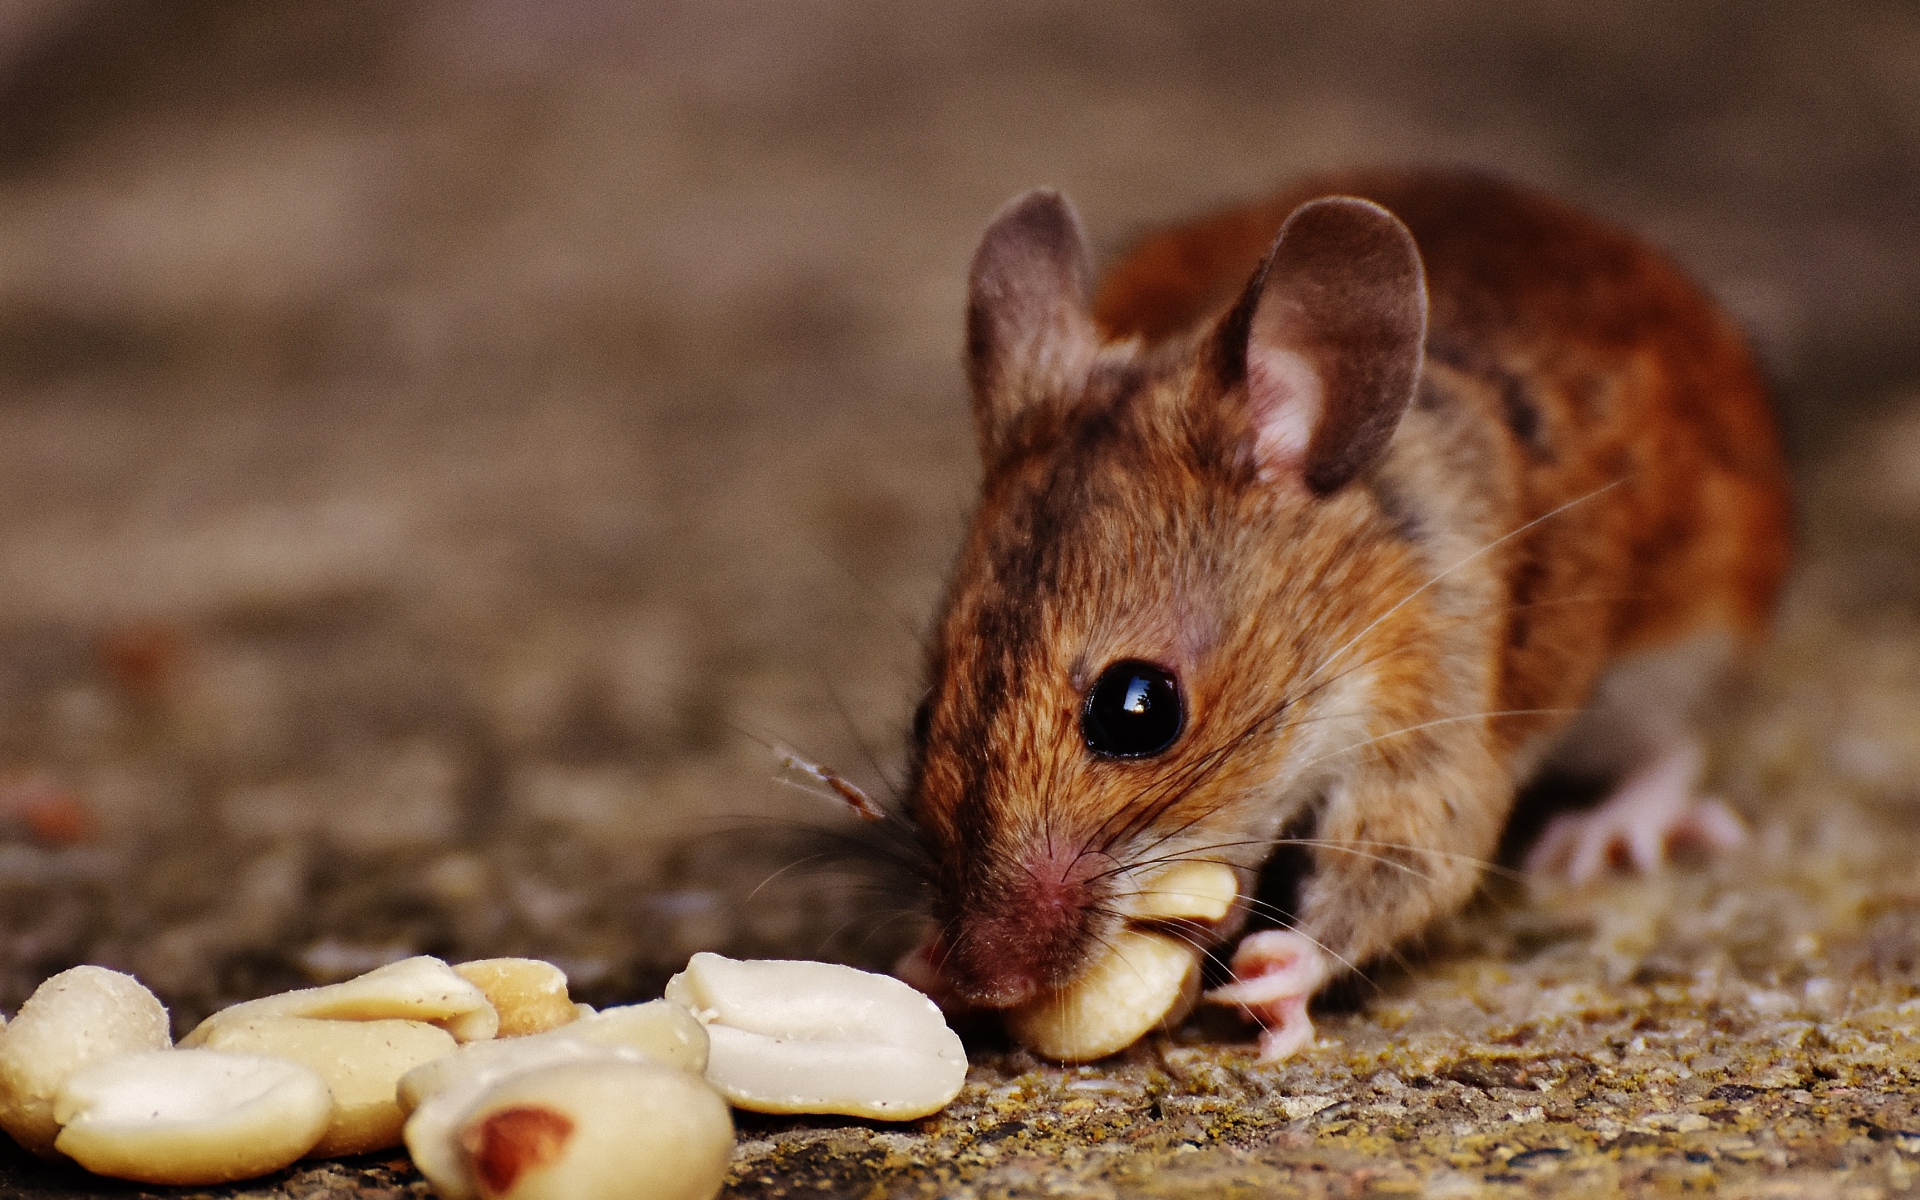 Картинки Древесная мышь, мышь, грызуны, орехи, продукты питания фото и обои на рабочий стол